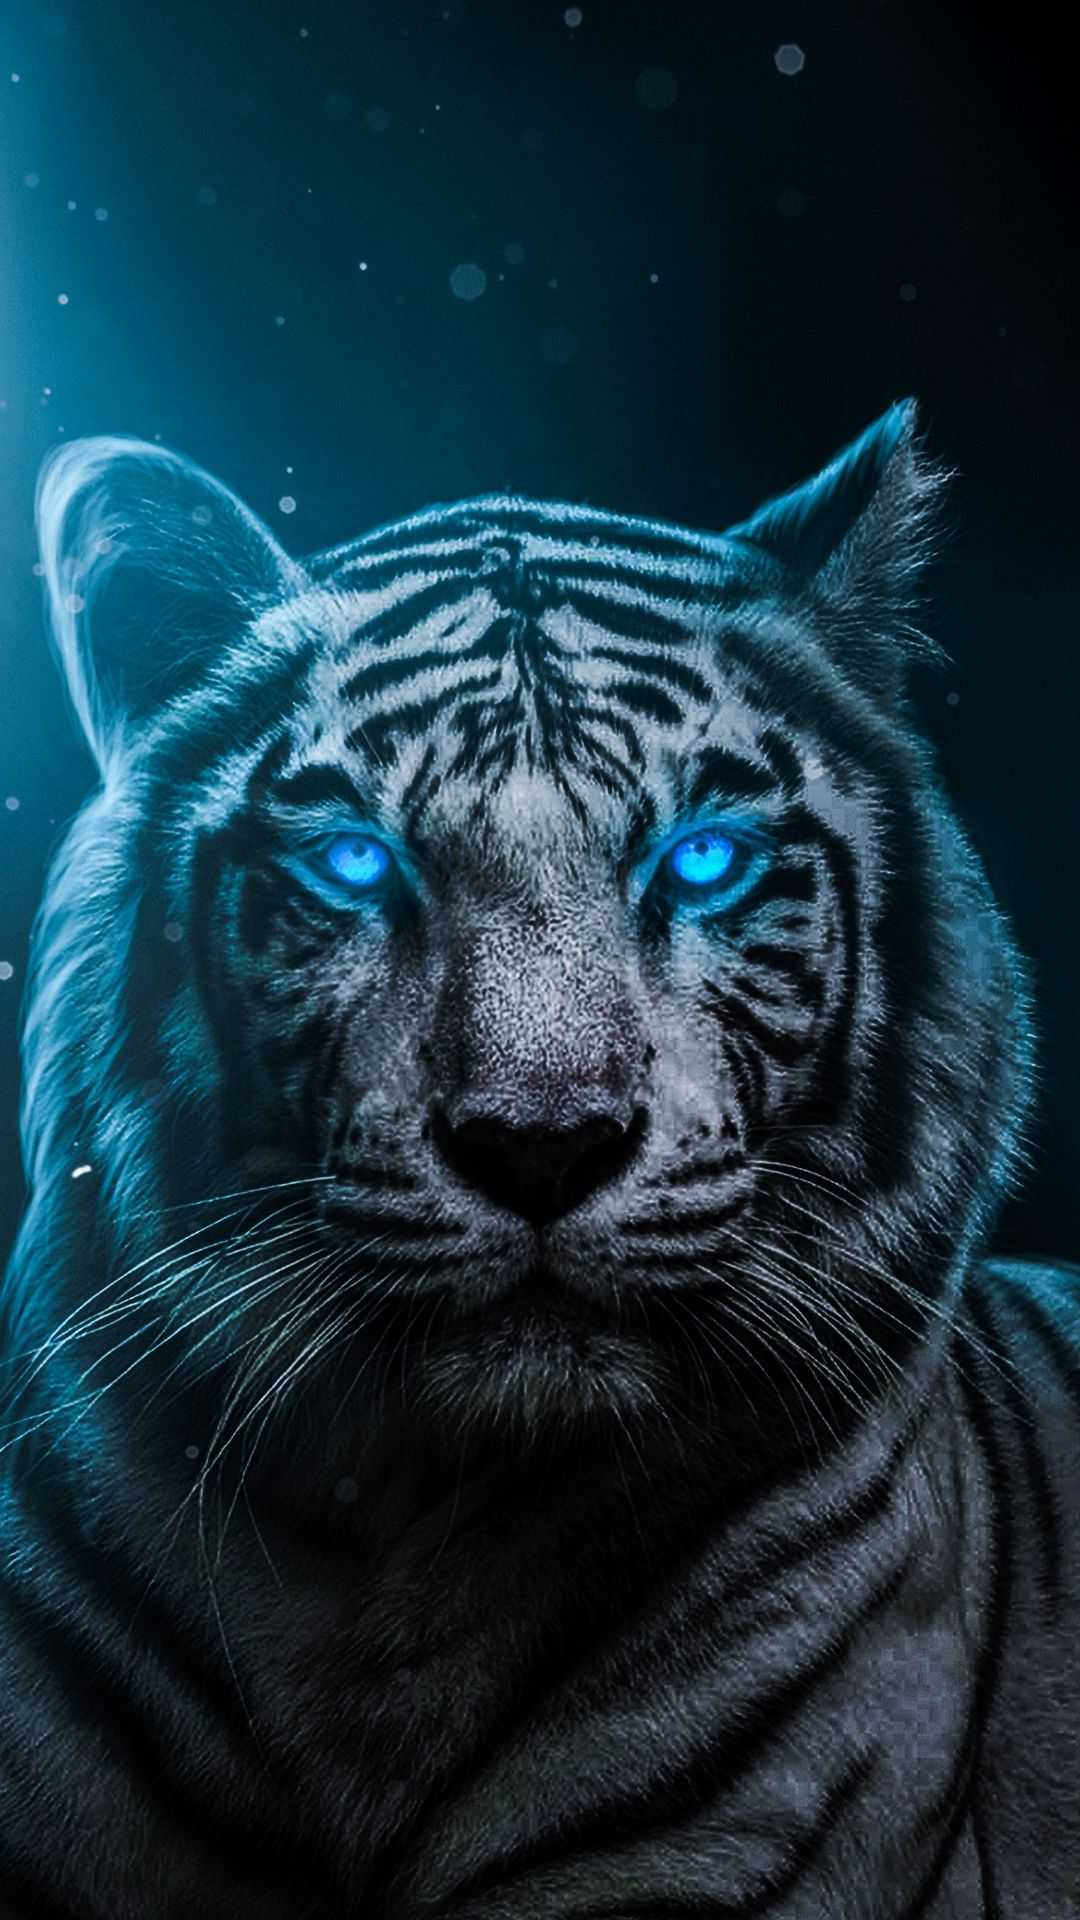 1080x1920 Tiger Wallpaper